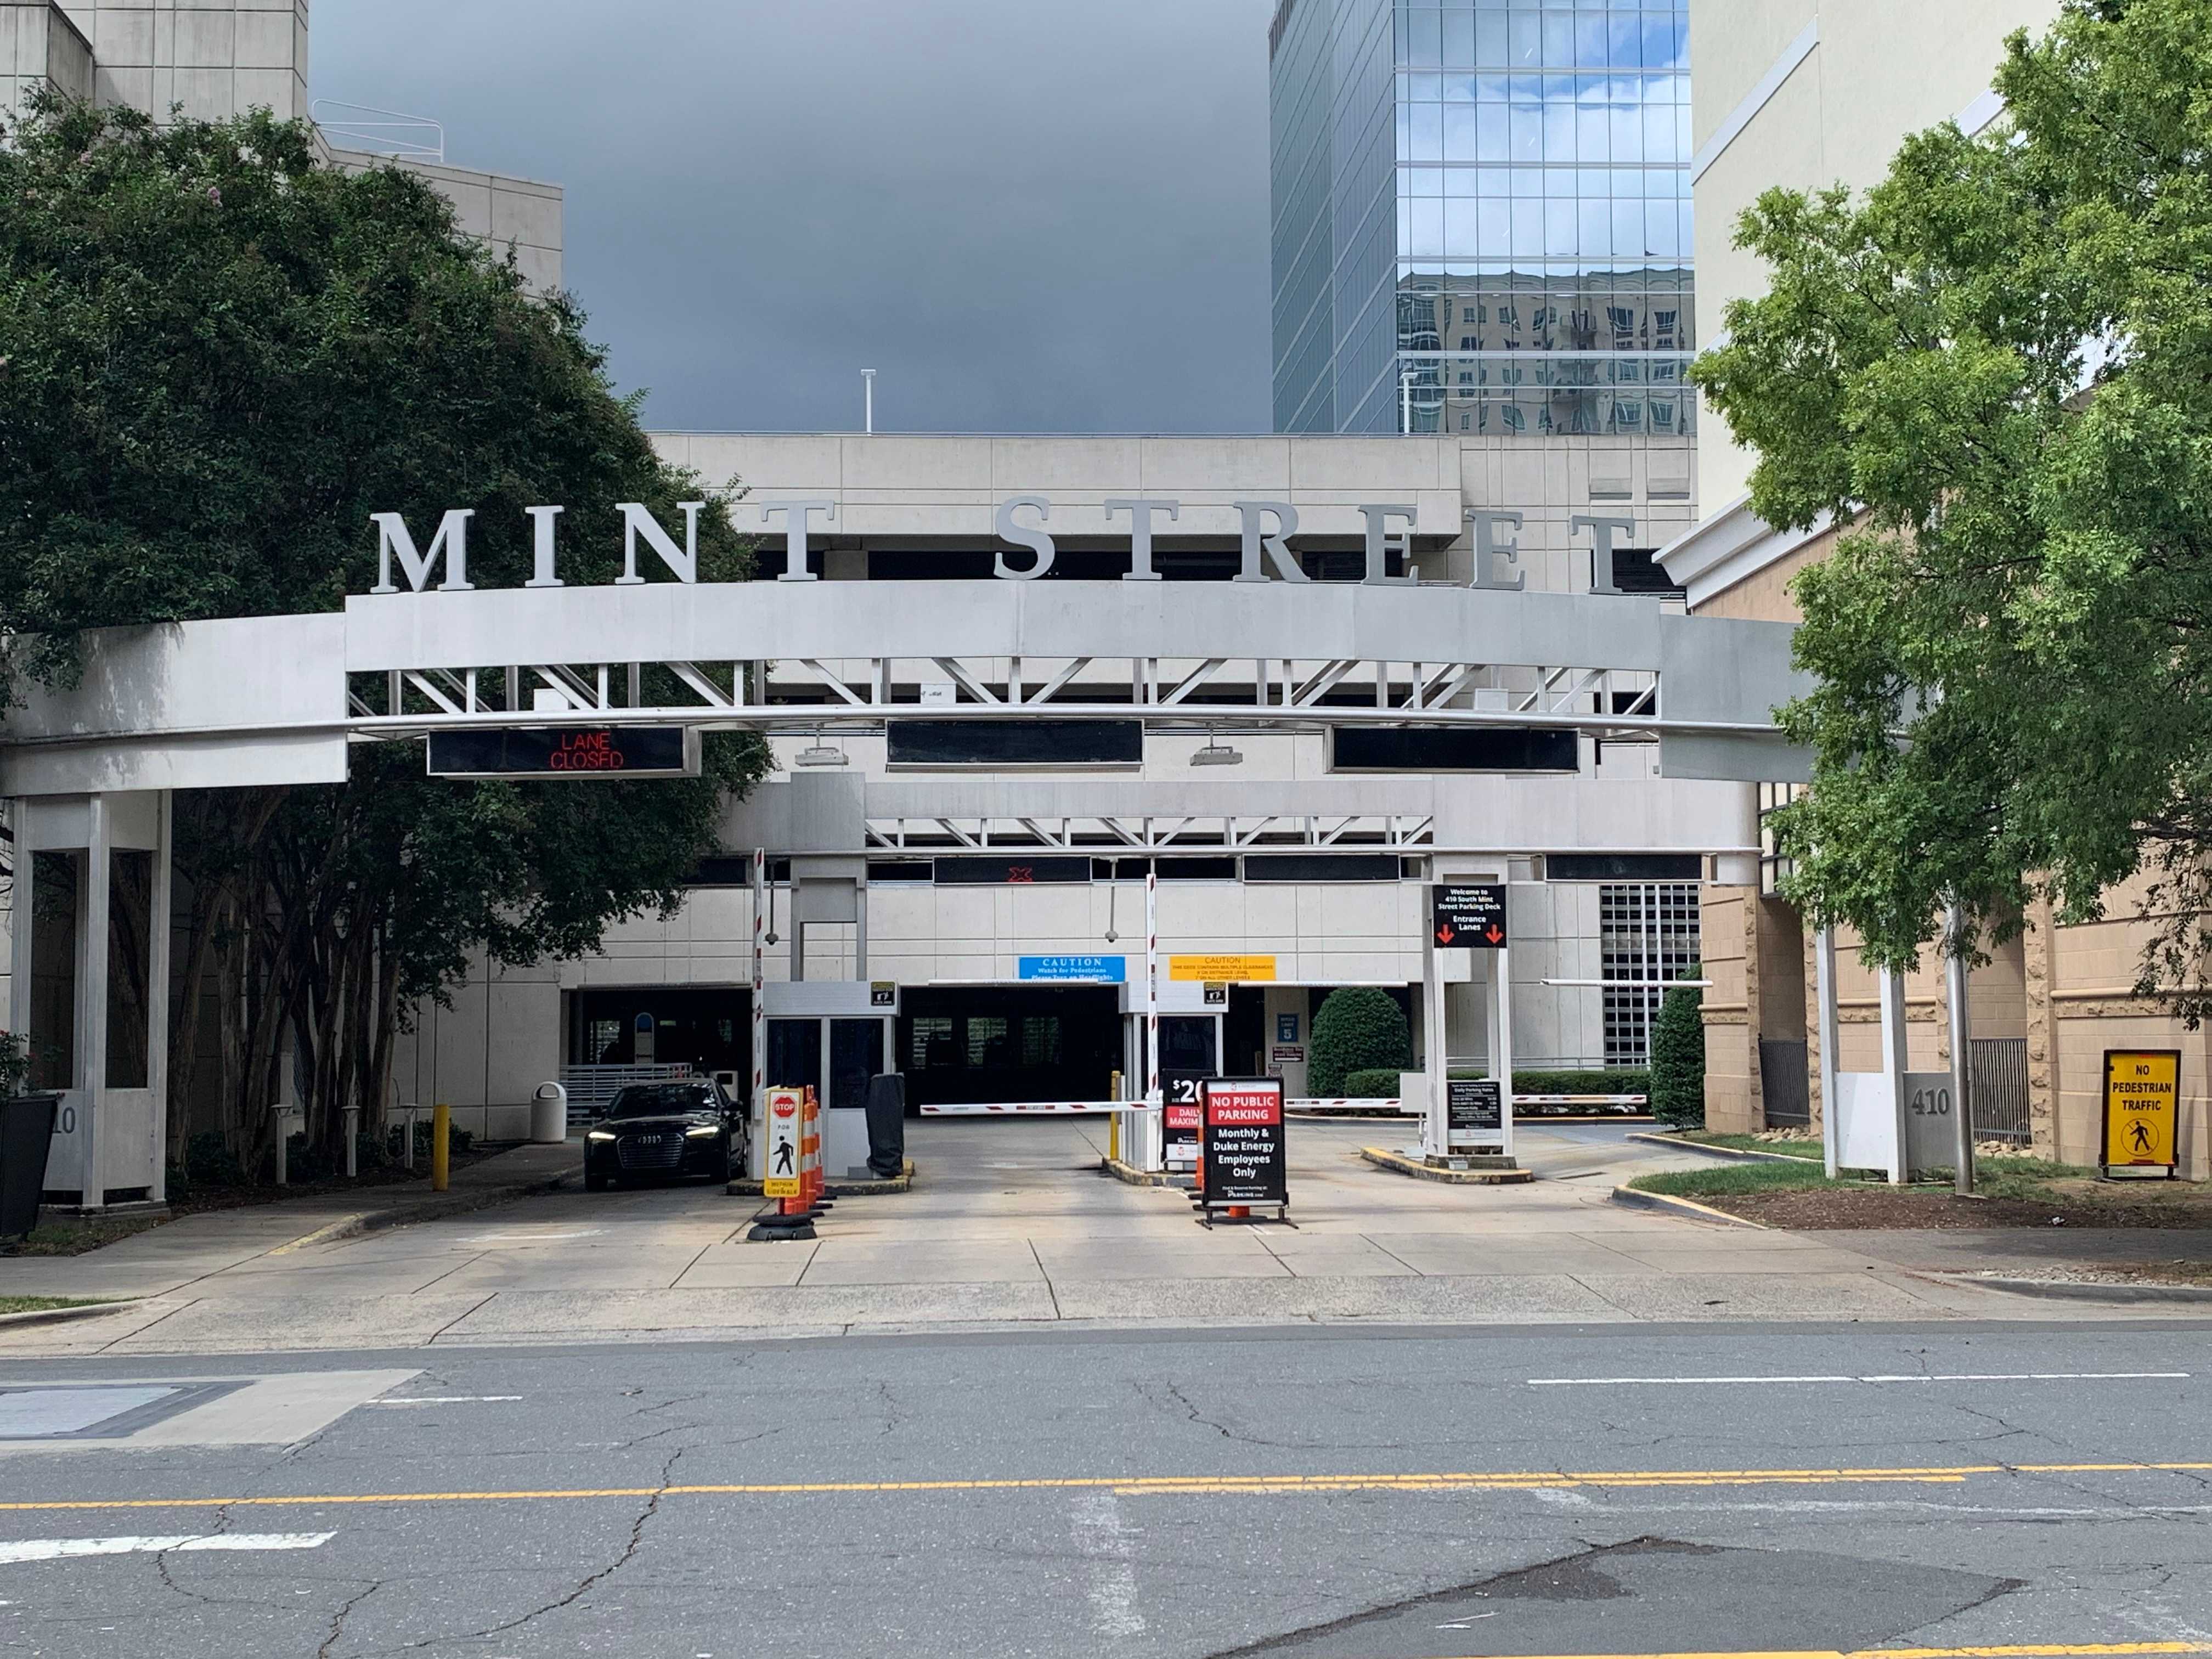 Mint St Entrance